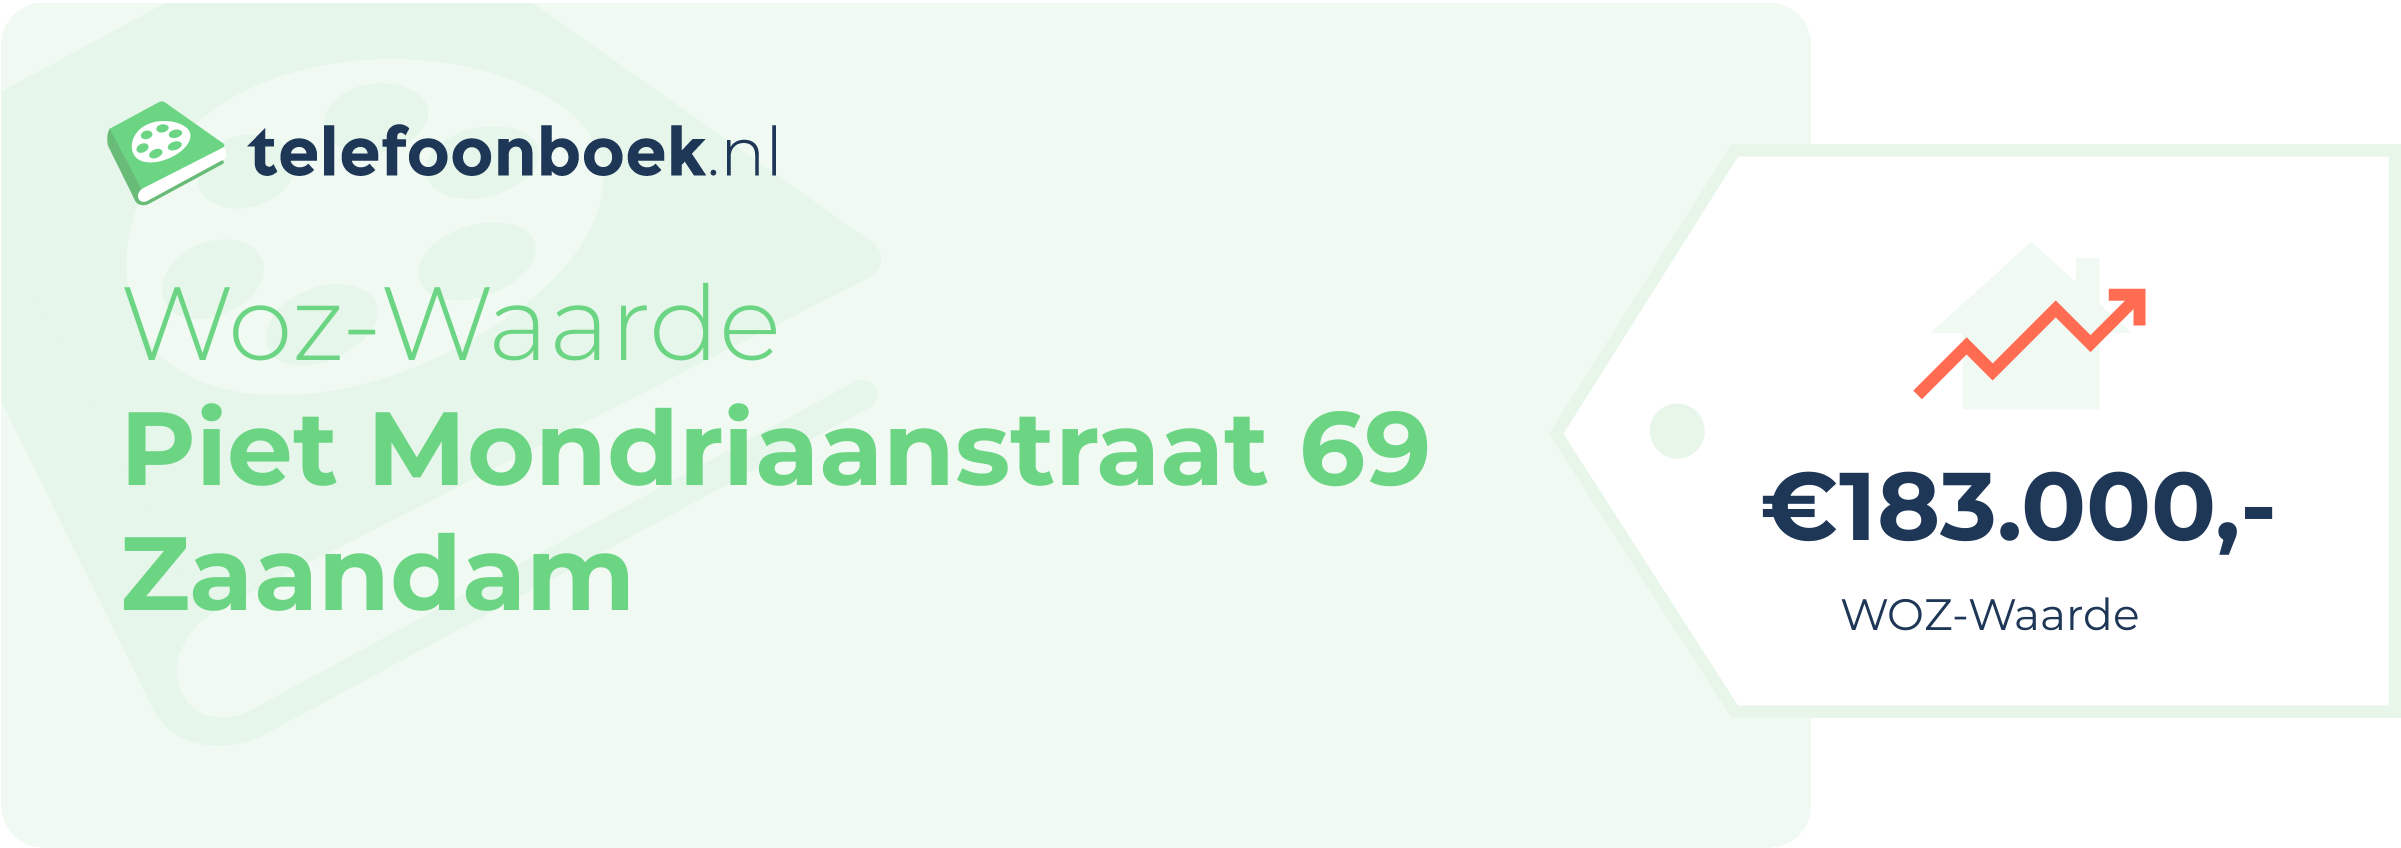 WOZ-waarde Piet Mondriaanstraat 69 Zaandam